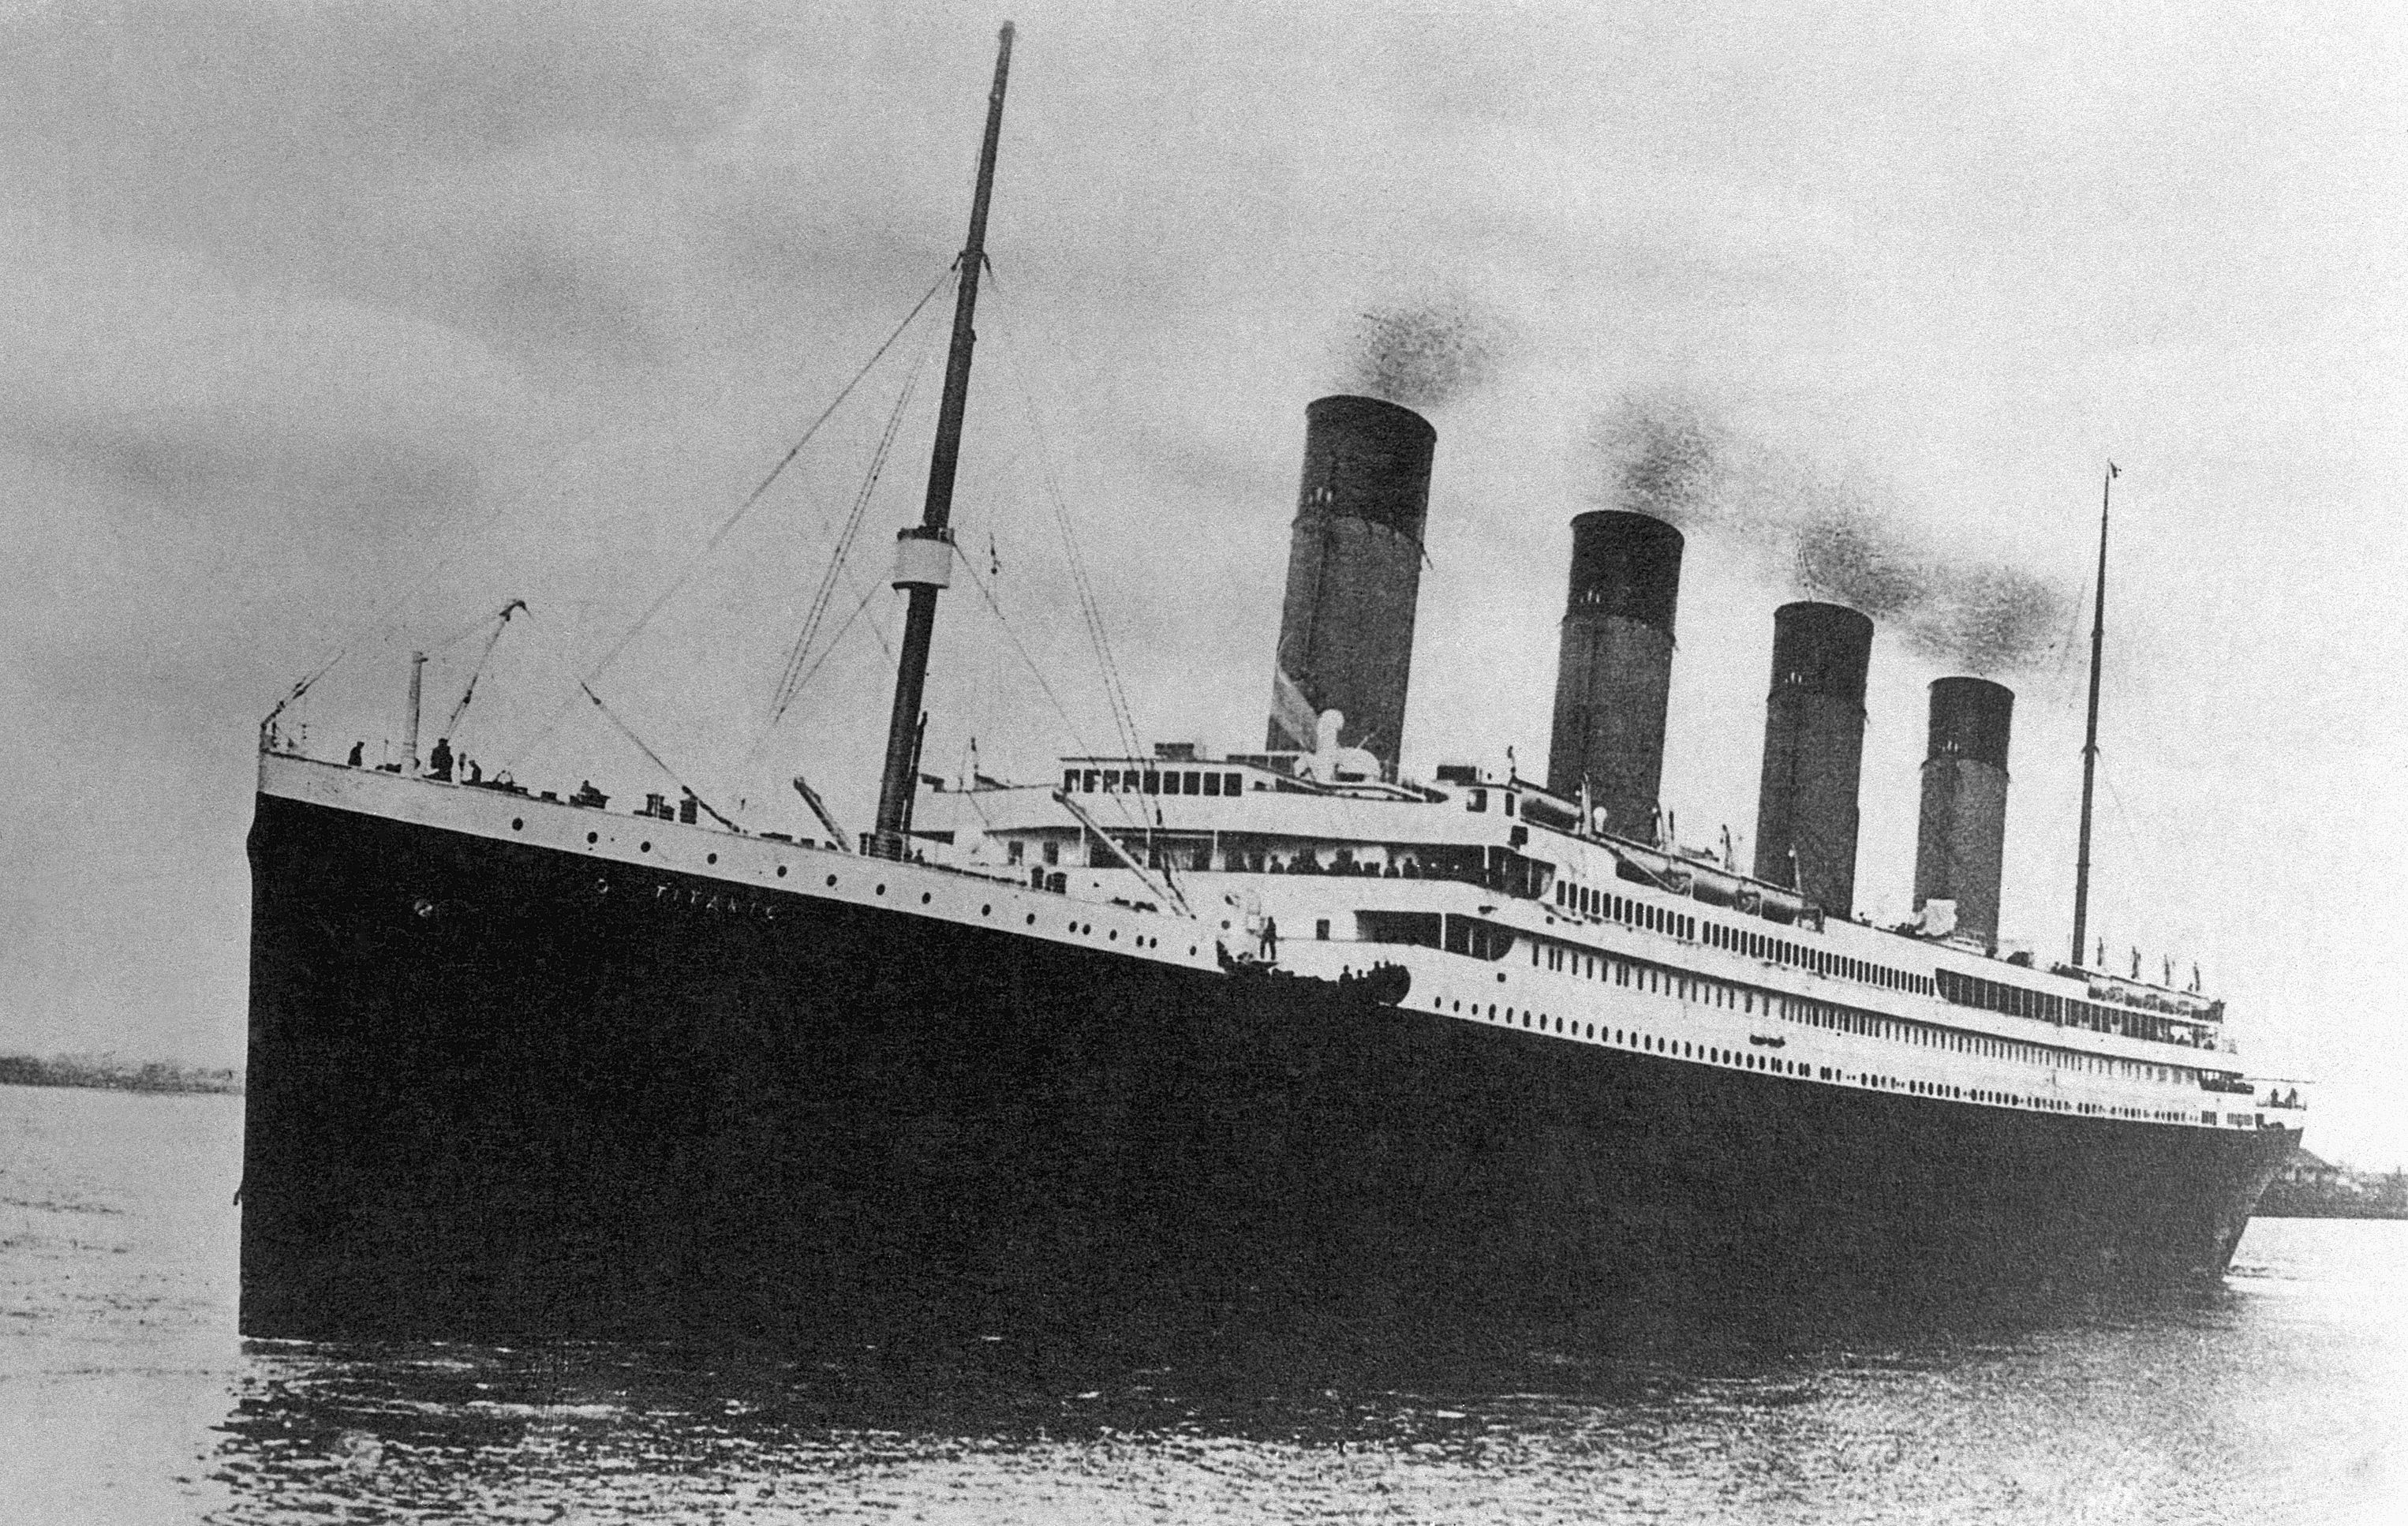 Пароход "Титаник", который в 1912 году столкнулся с айсбергом